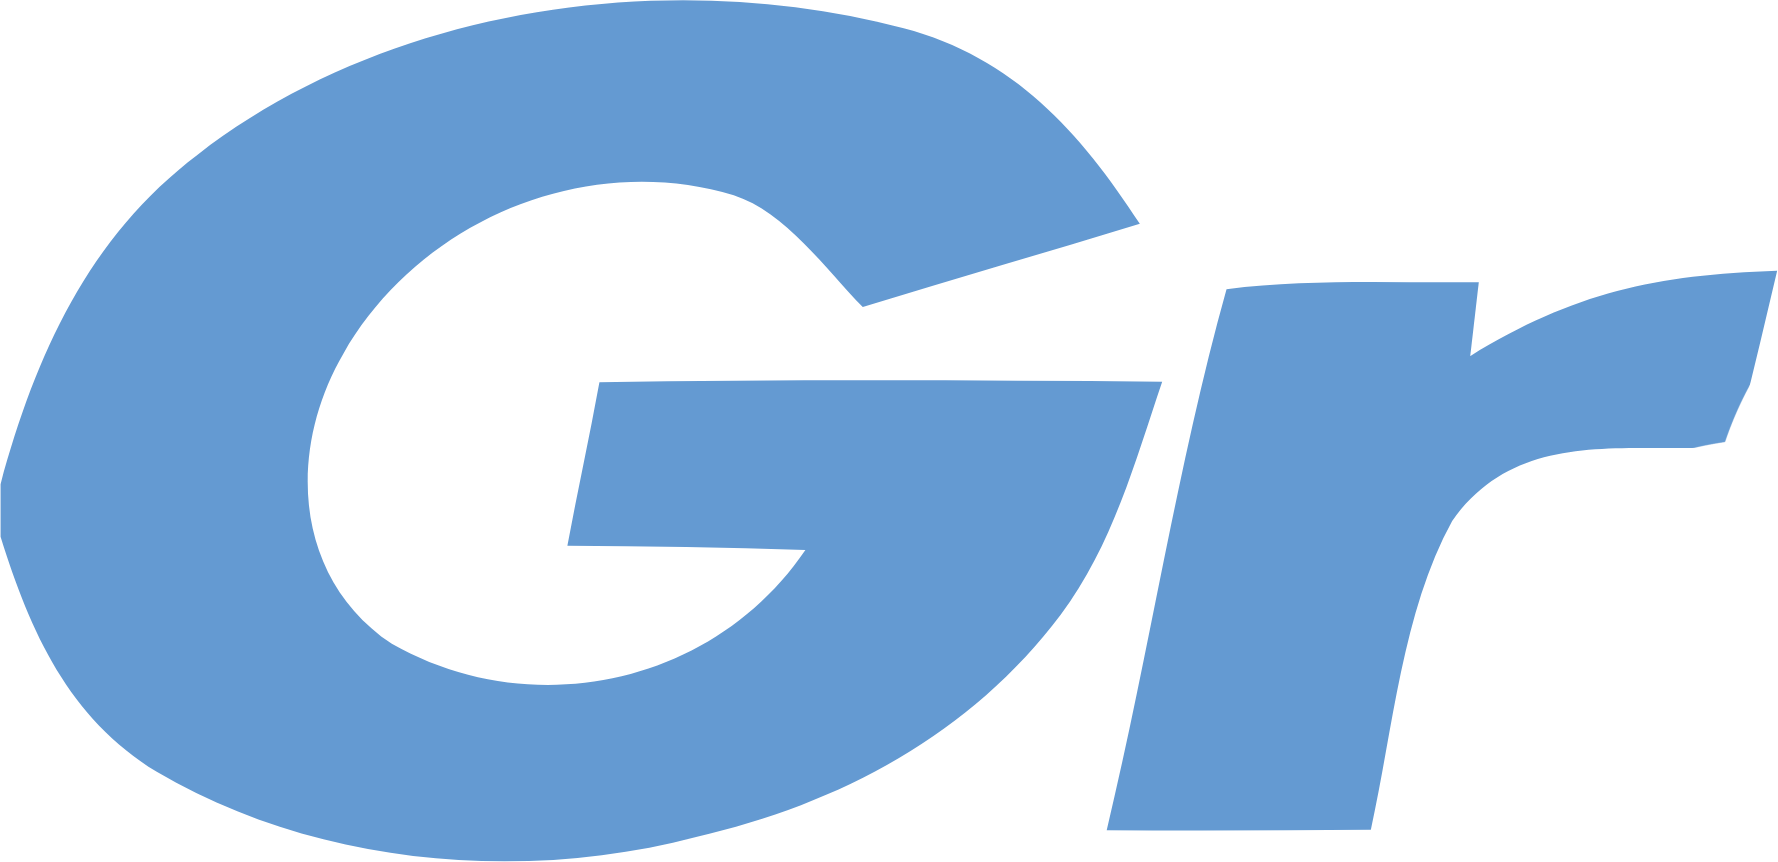 Grendene logo (transparent PNG)